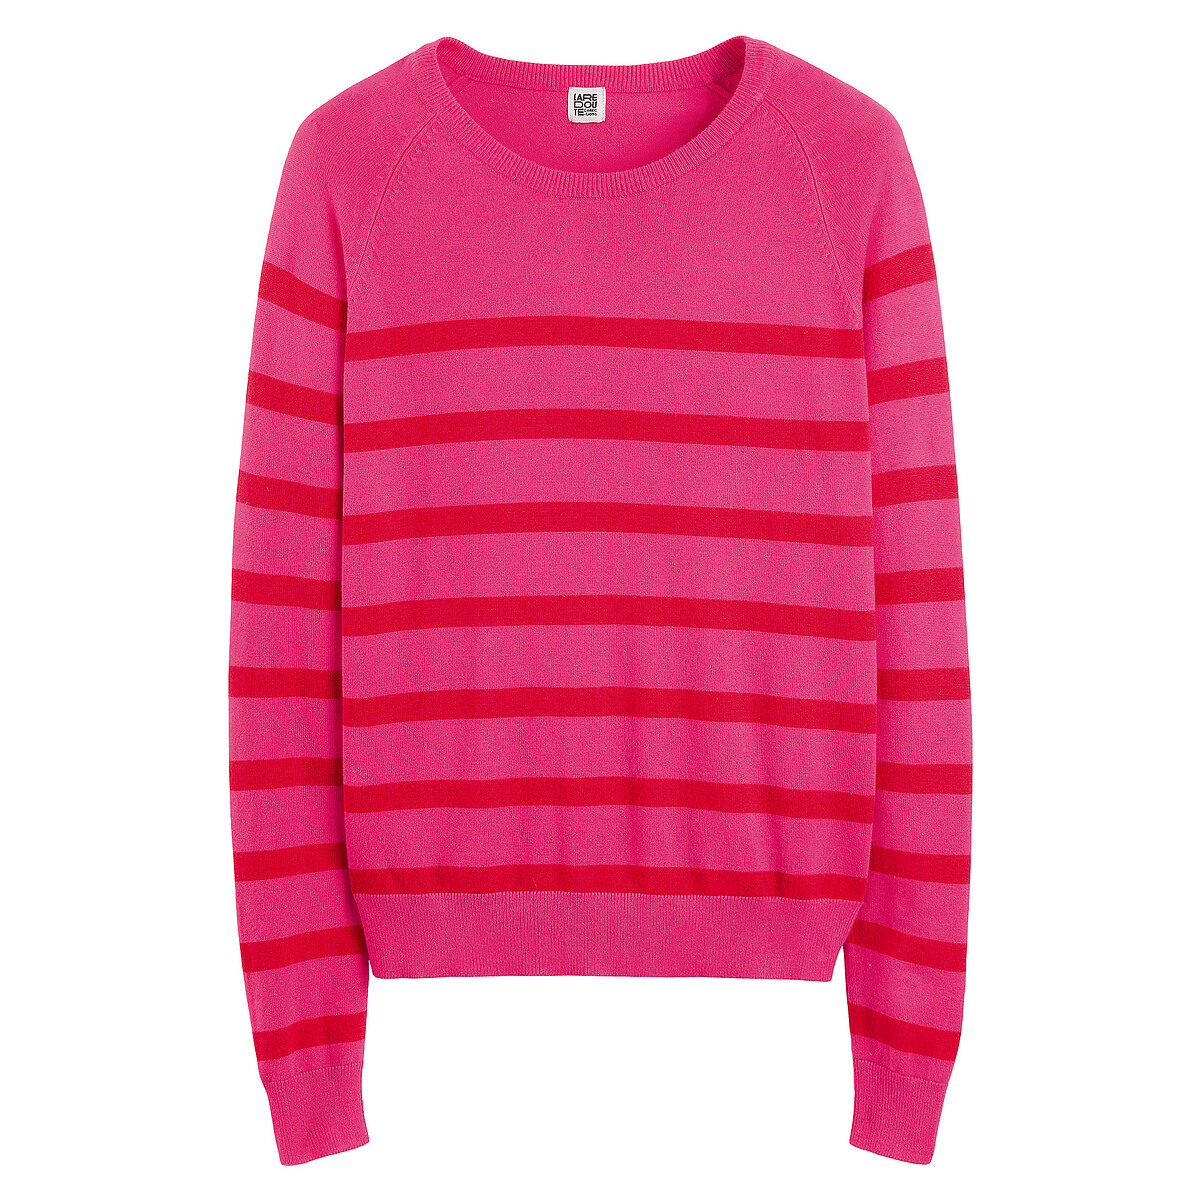 Пуловер базовый с круглым вырезом длинными рукавами принтом в полоску  M розовый LaRedoute, размер M - фото 5